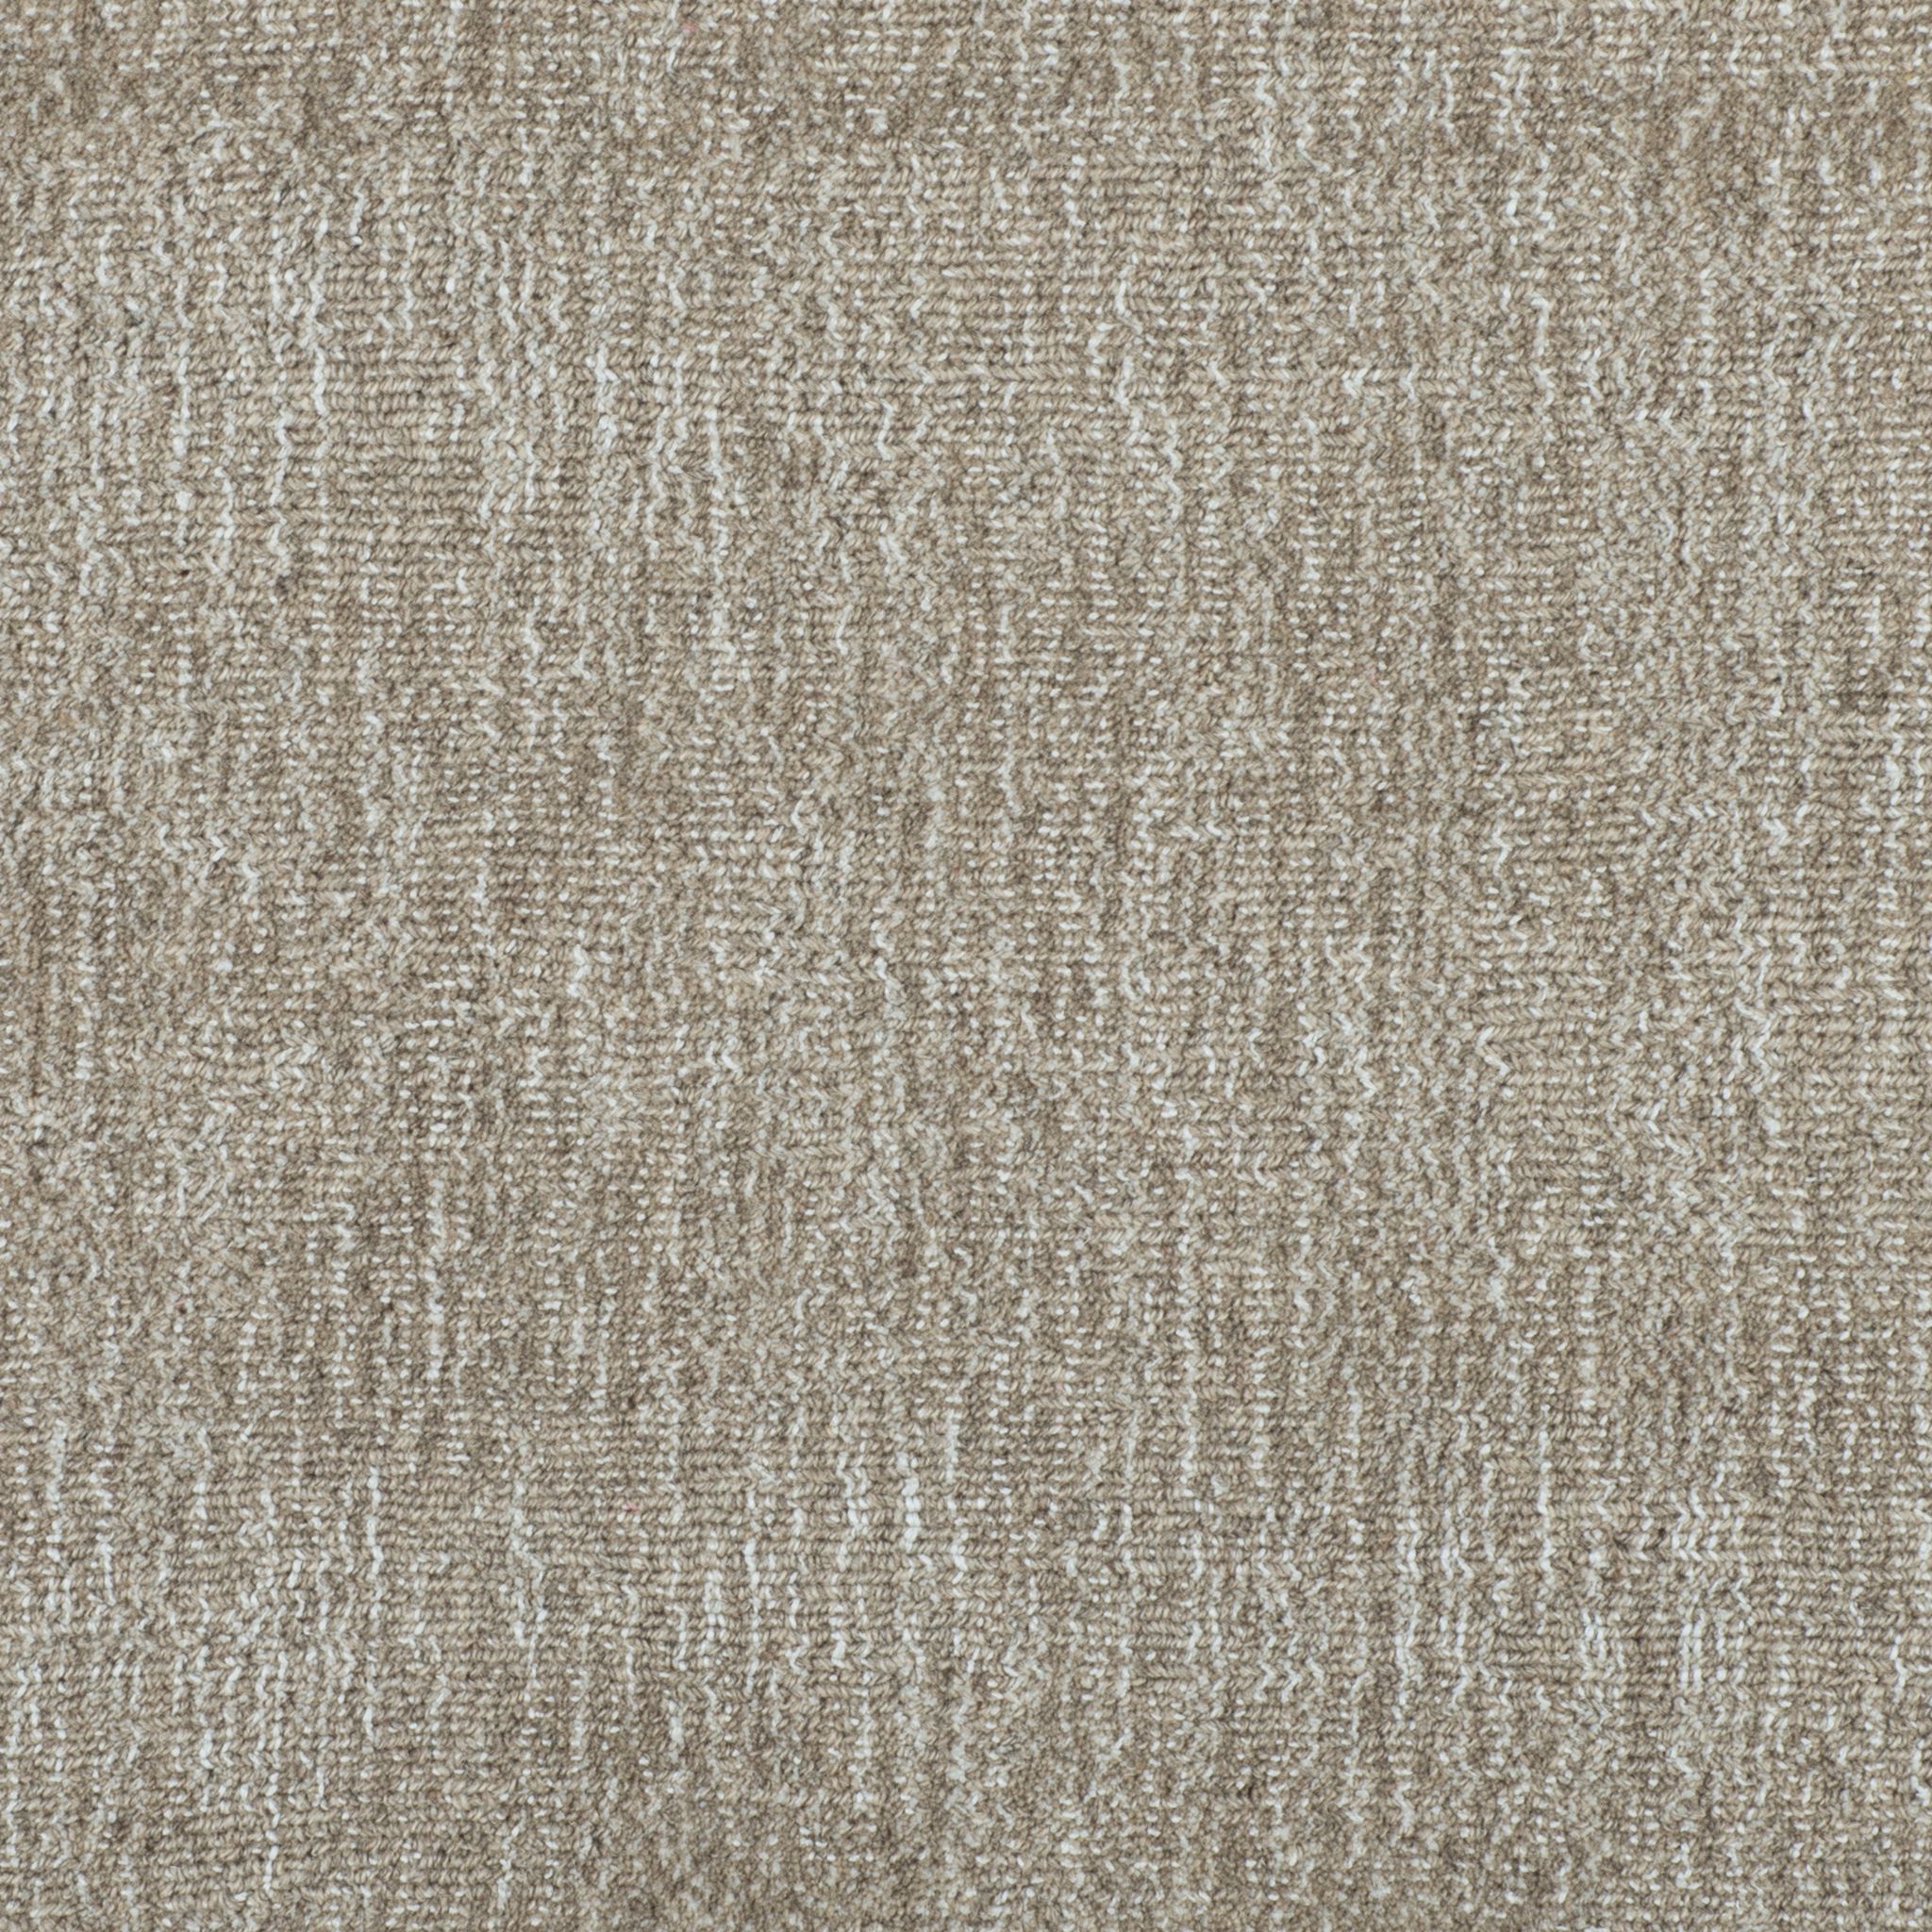 Lazaro Hand-Loomed Carpet, Natural Beige Default Title